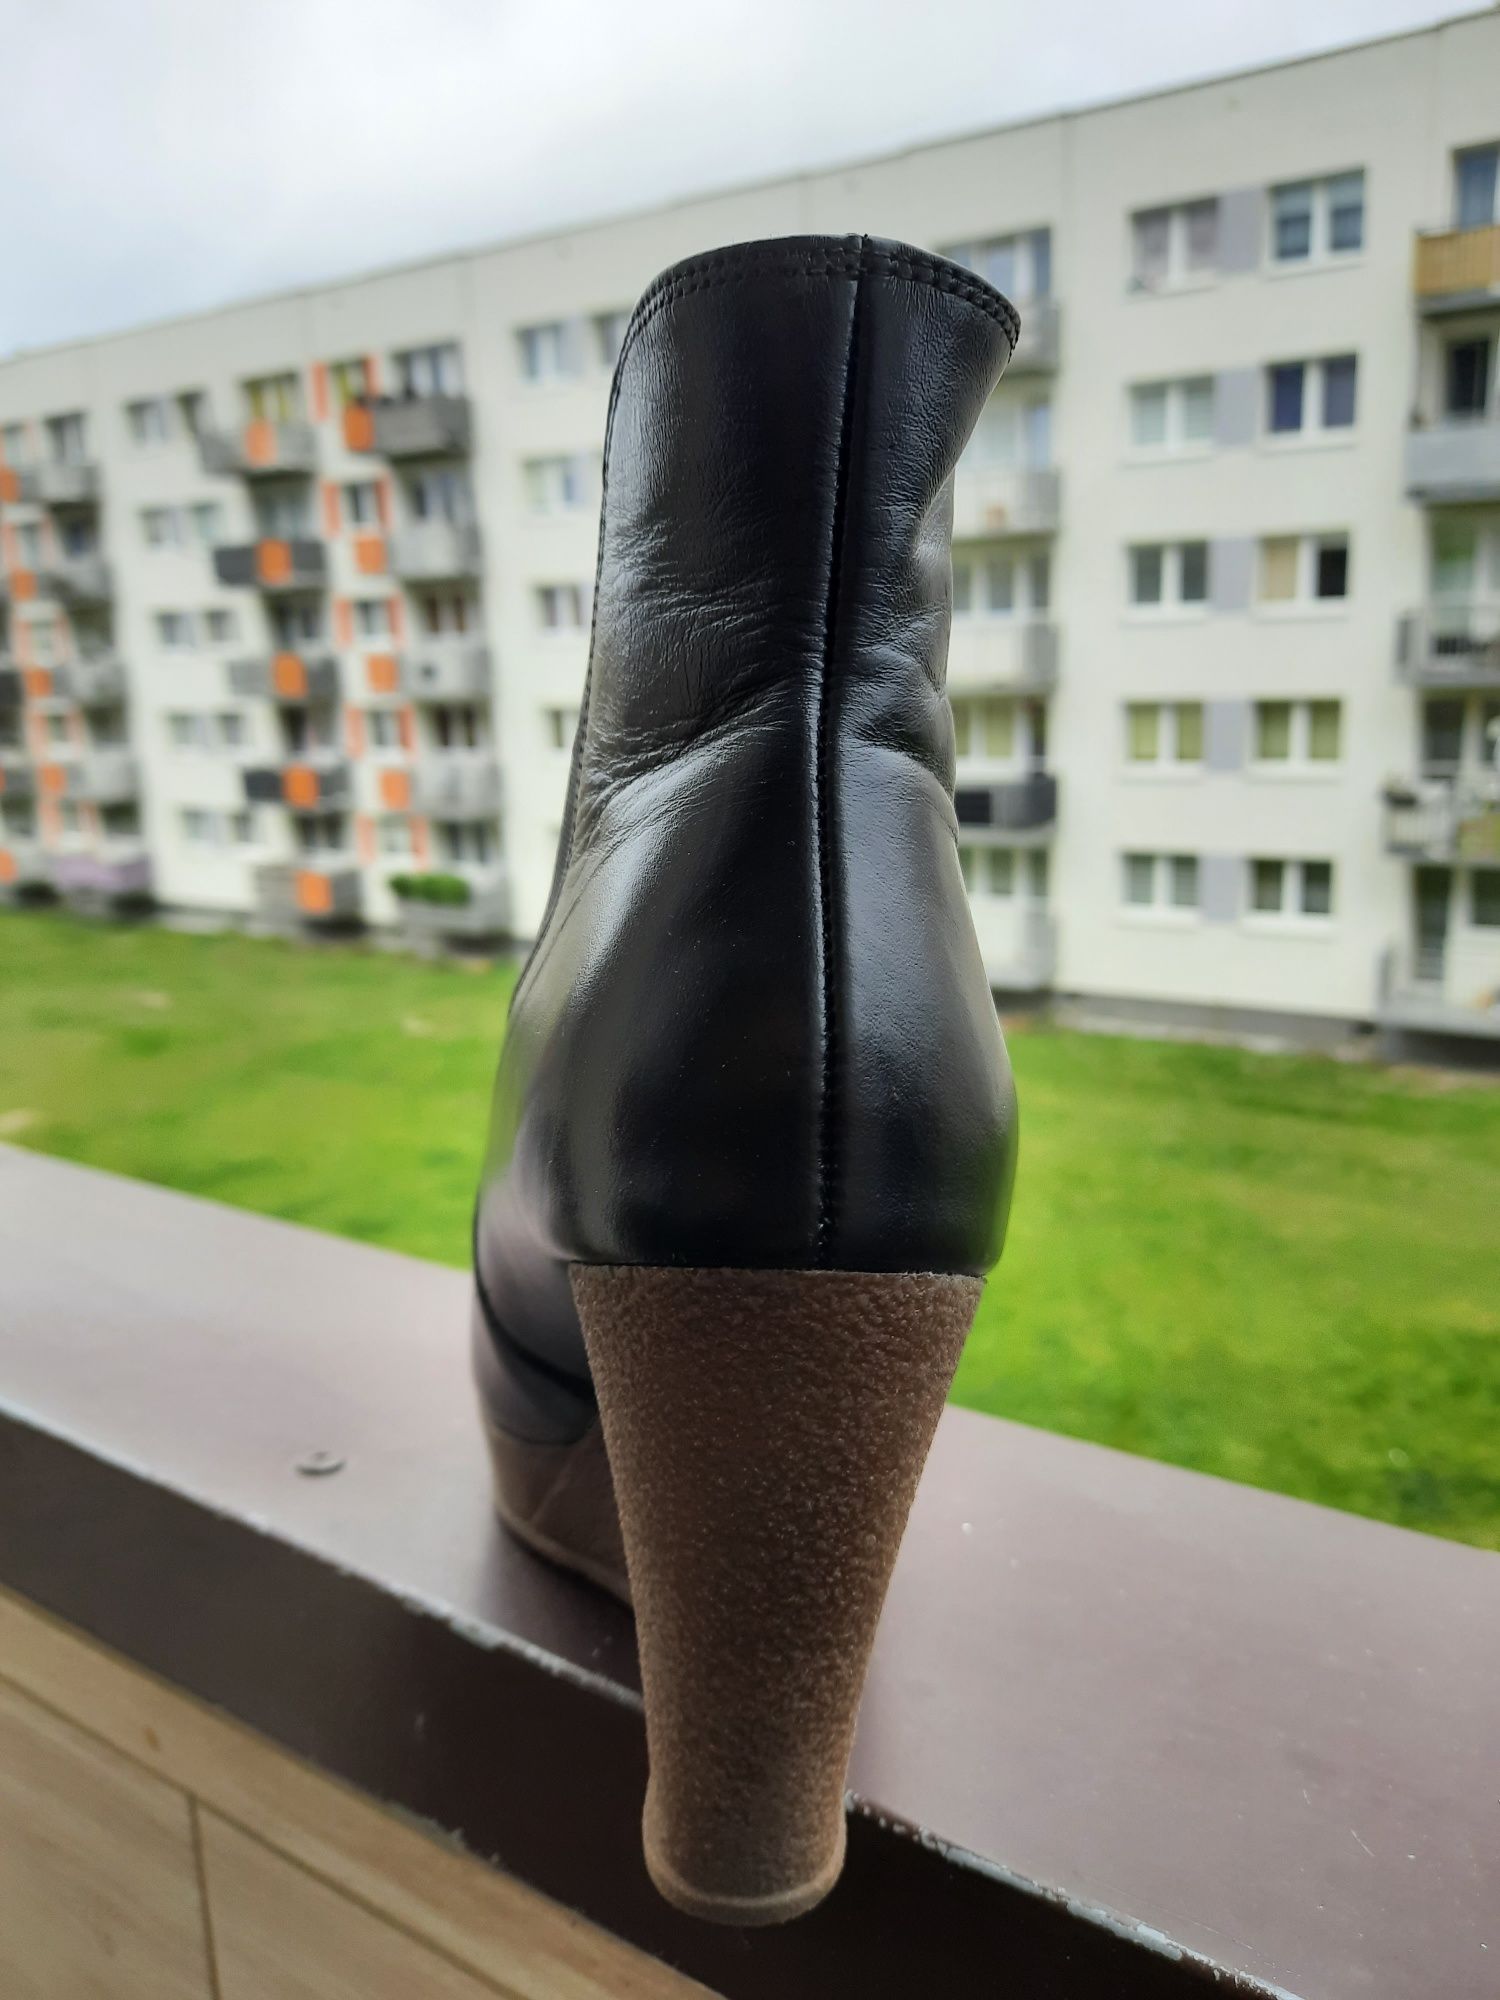 Kozaki kozaczki botki koturny r. 39, wkładka 24,5 cm